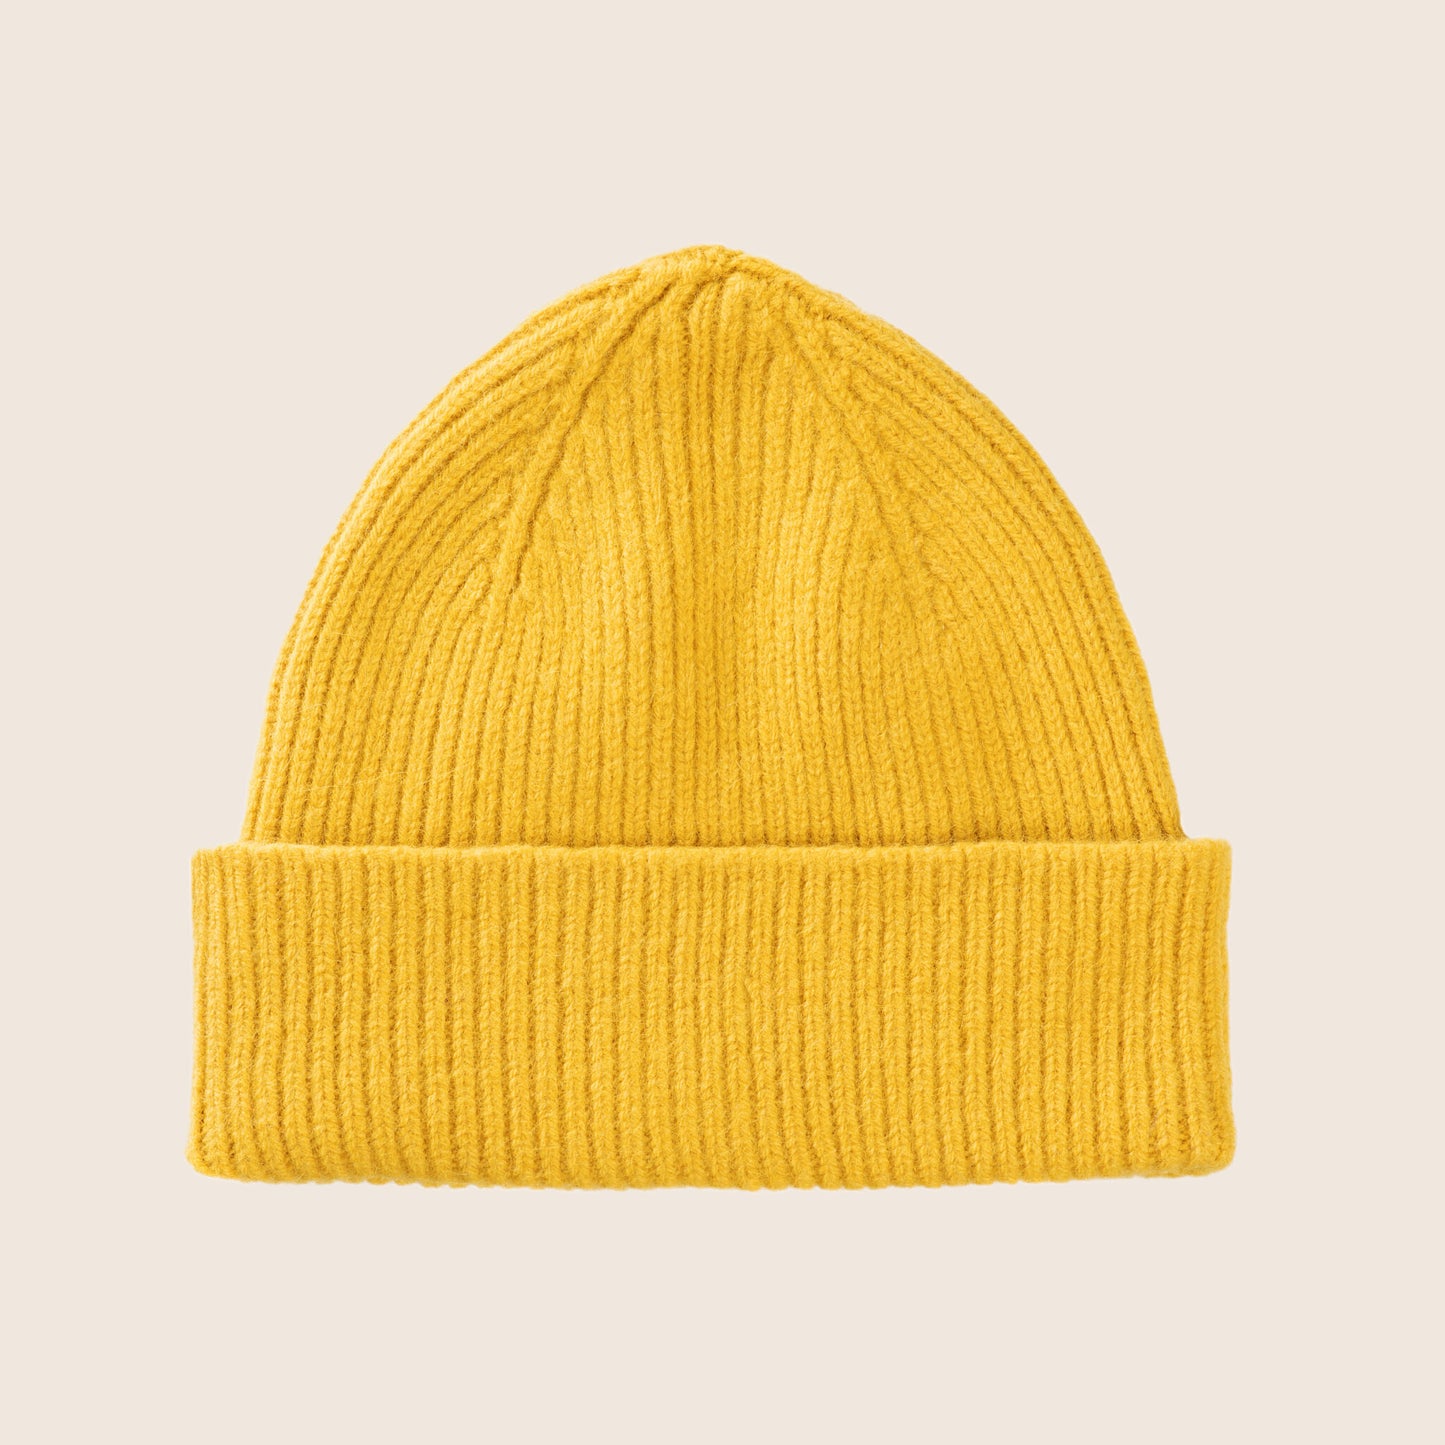 Mütze - Beanie von Le Bonnet - Mustard